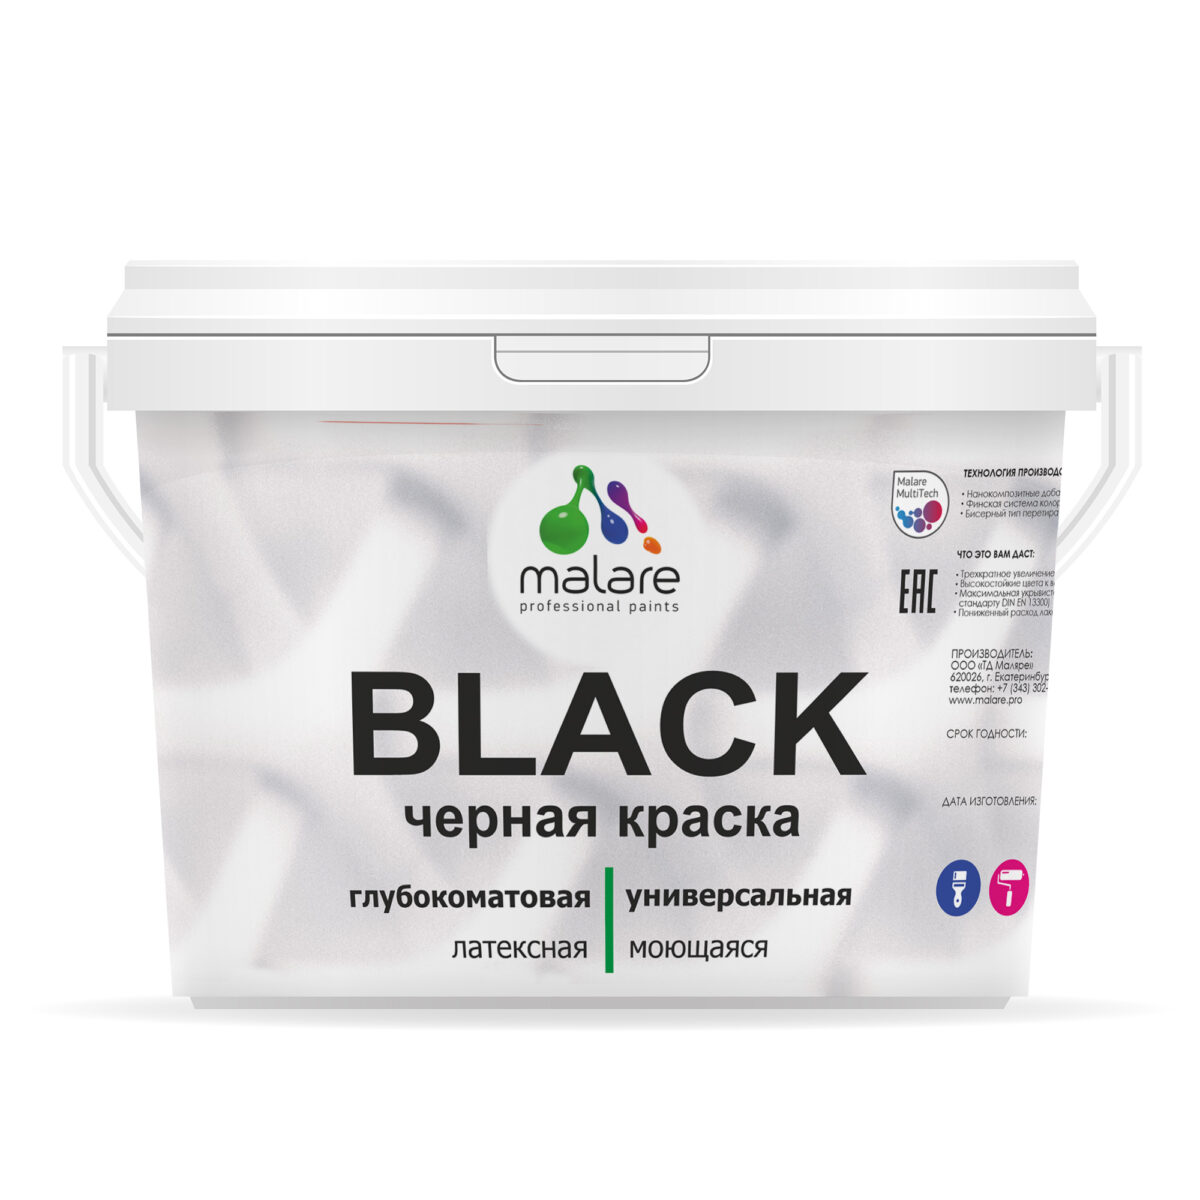 Краска Malare Black интерьерная, чёрная глубокоматовая, универсальная, для стен, обоев, потолка, дерева, металла и минеральных поверхностей, без запаха, матовое покрытие (9 л = 13 кг).